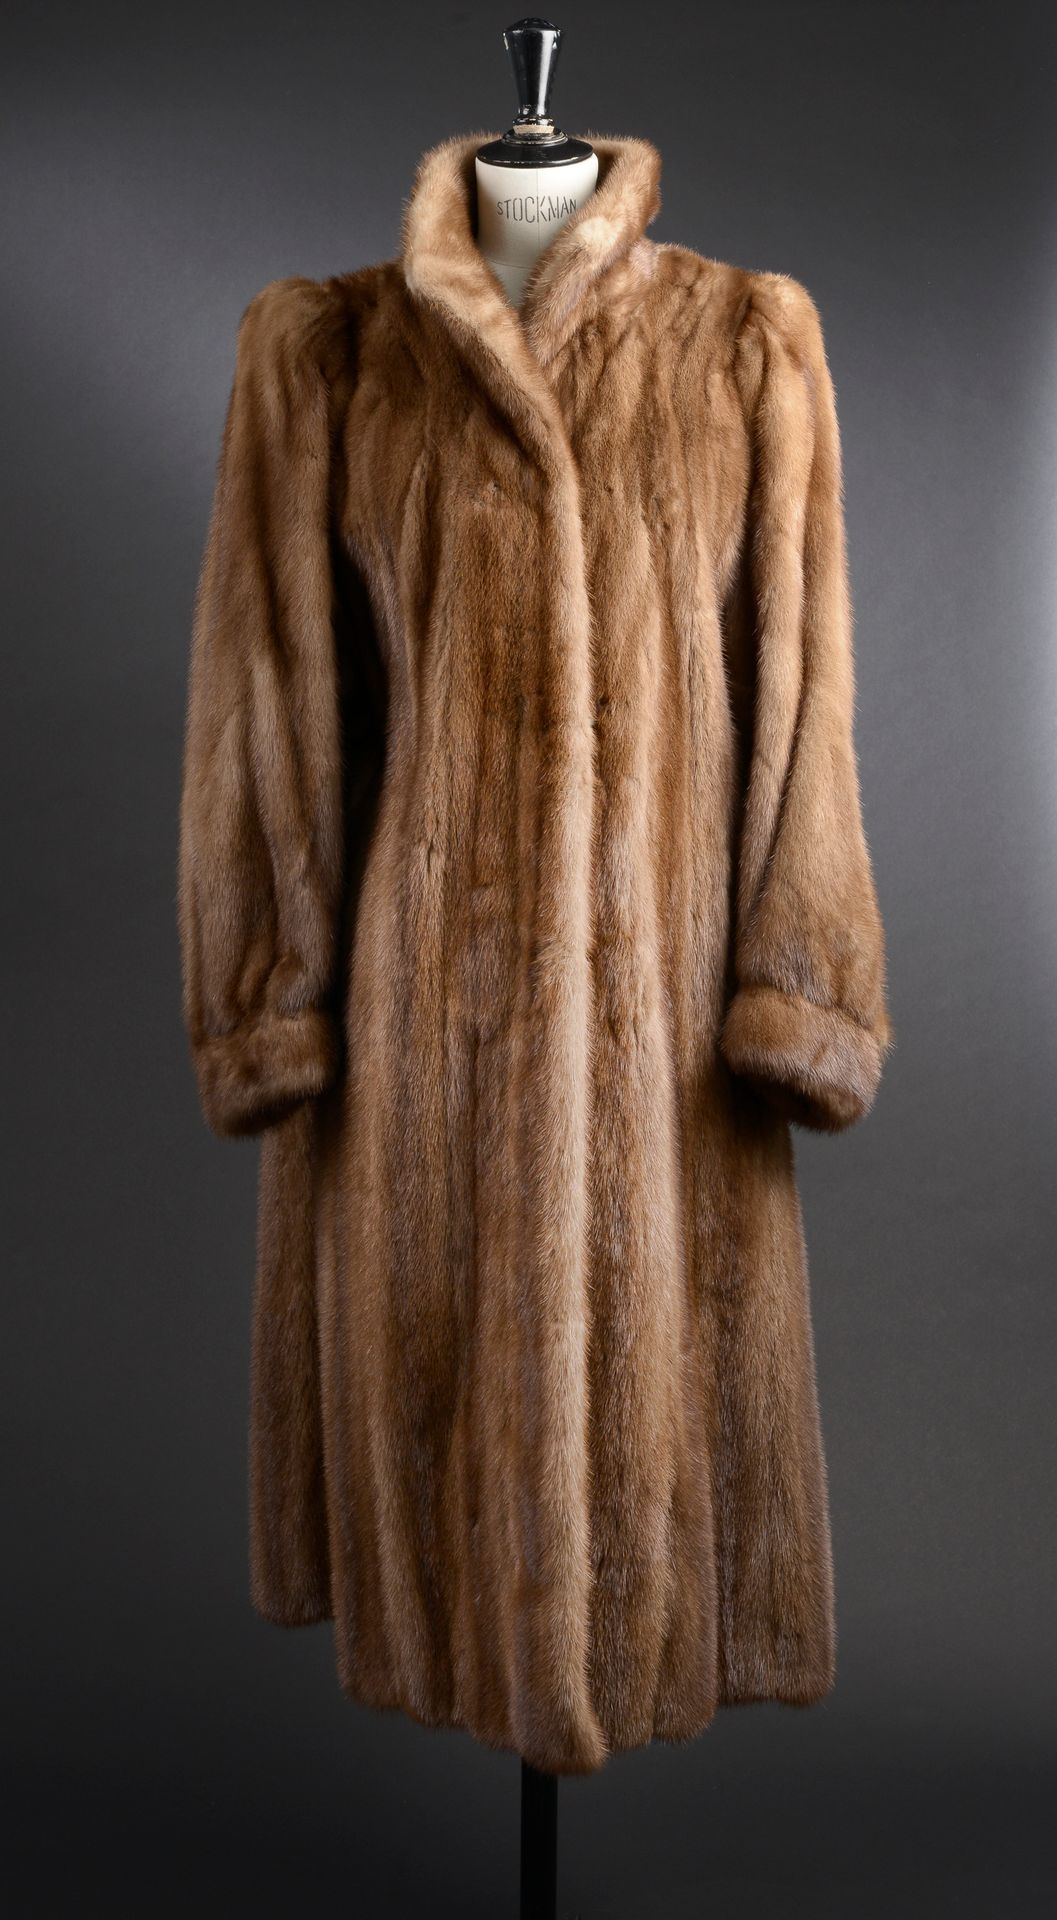 Null E.P. COAT - 估计尺寸：42
浅色貂皮长外套，高领，略微膨大的袖子，手腕处收紧，一个内袋，缎面衬里，用钩子封口。 

状况良好。